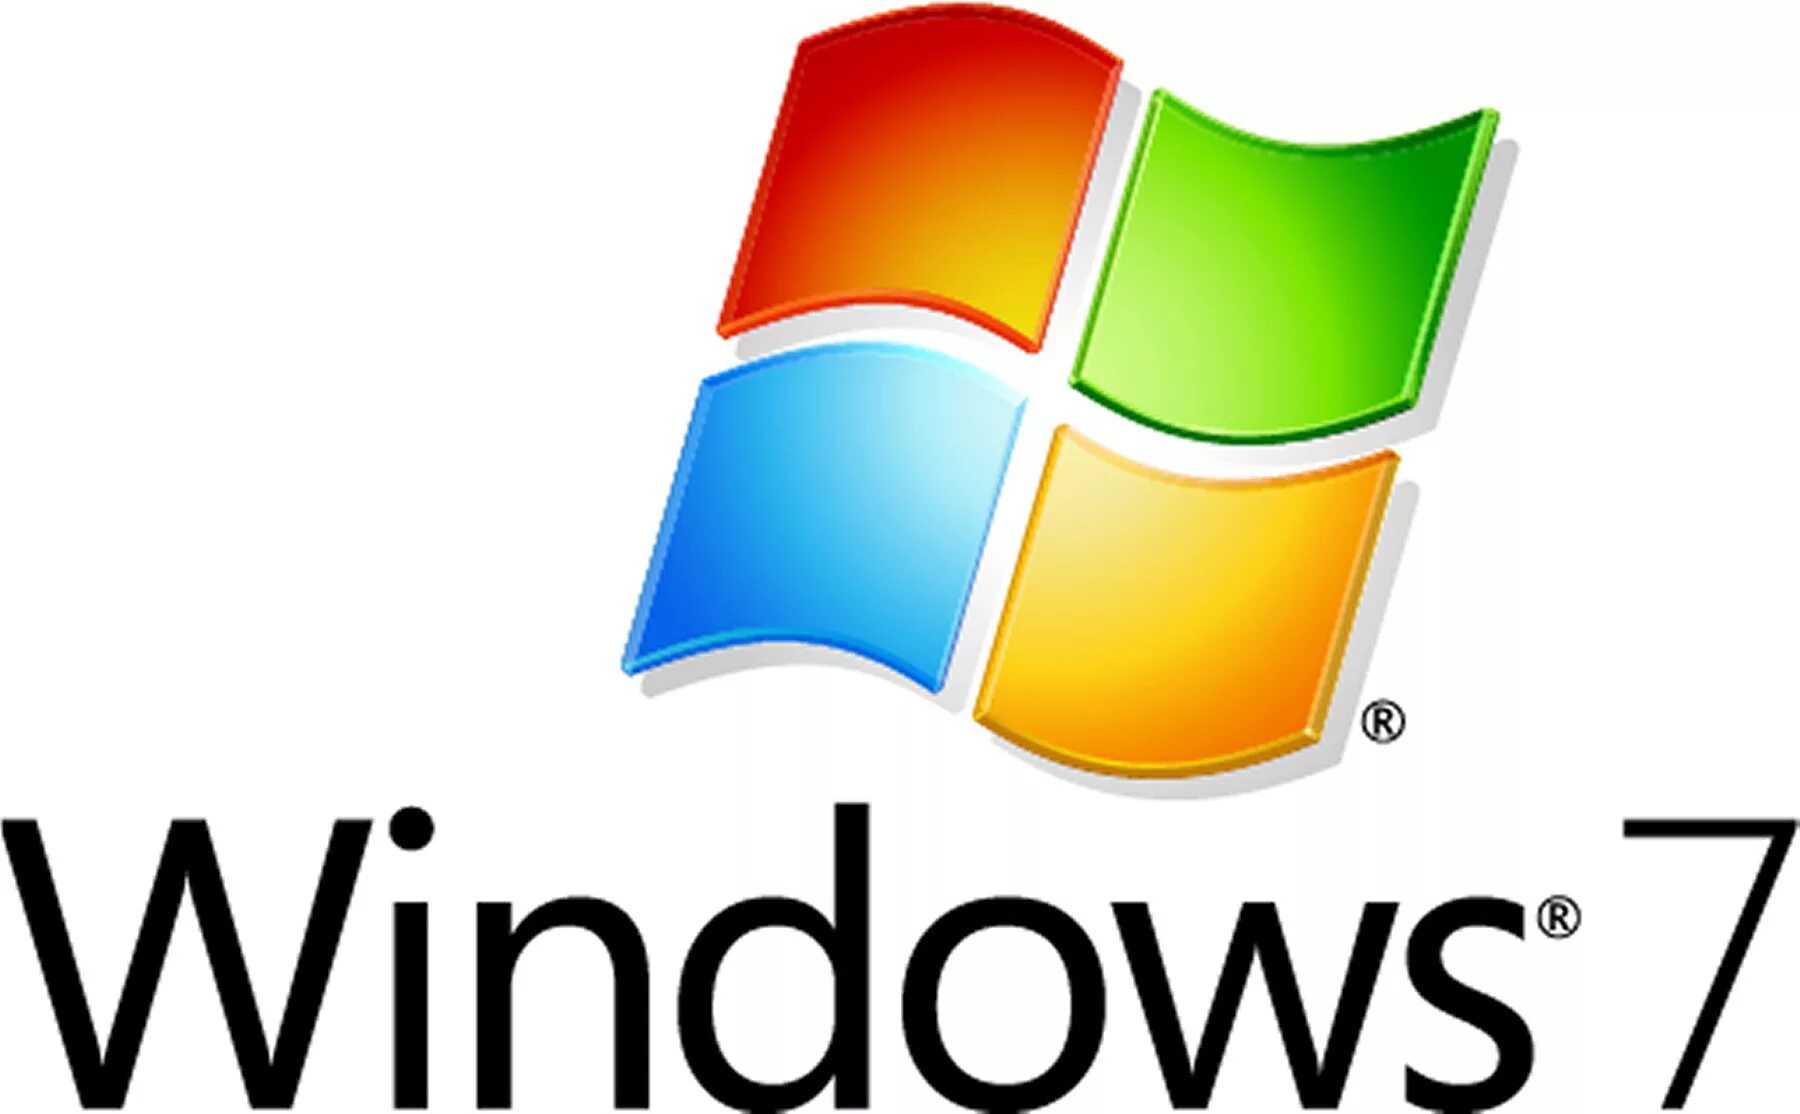 Значок виндовс. Операционные системы Windows. Логотип виндовс. Оперативная система Windows.